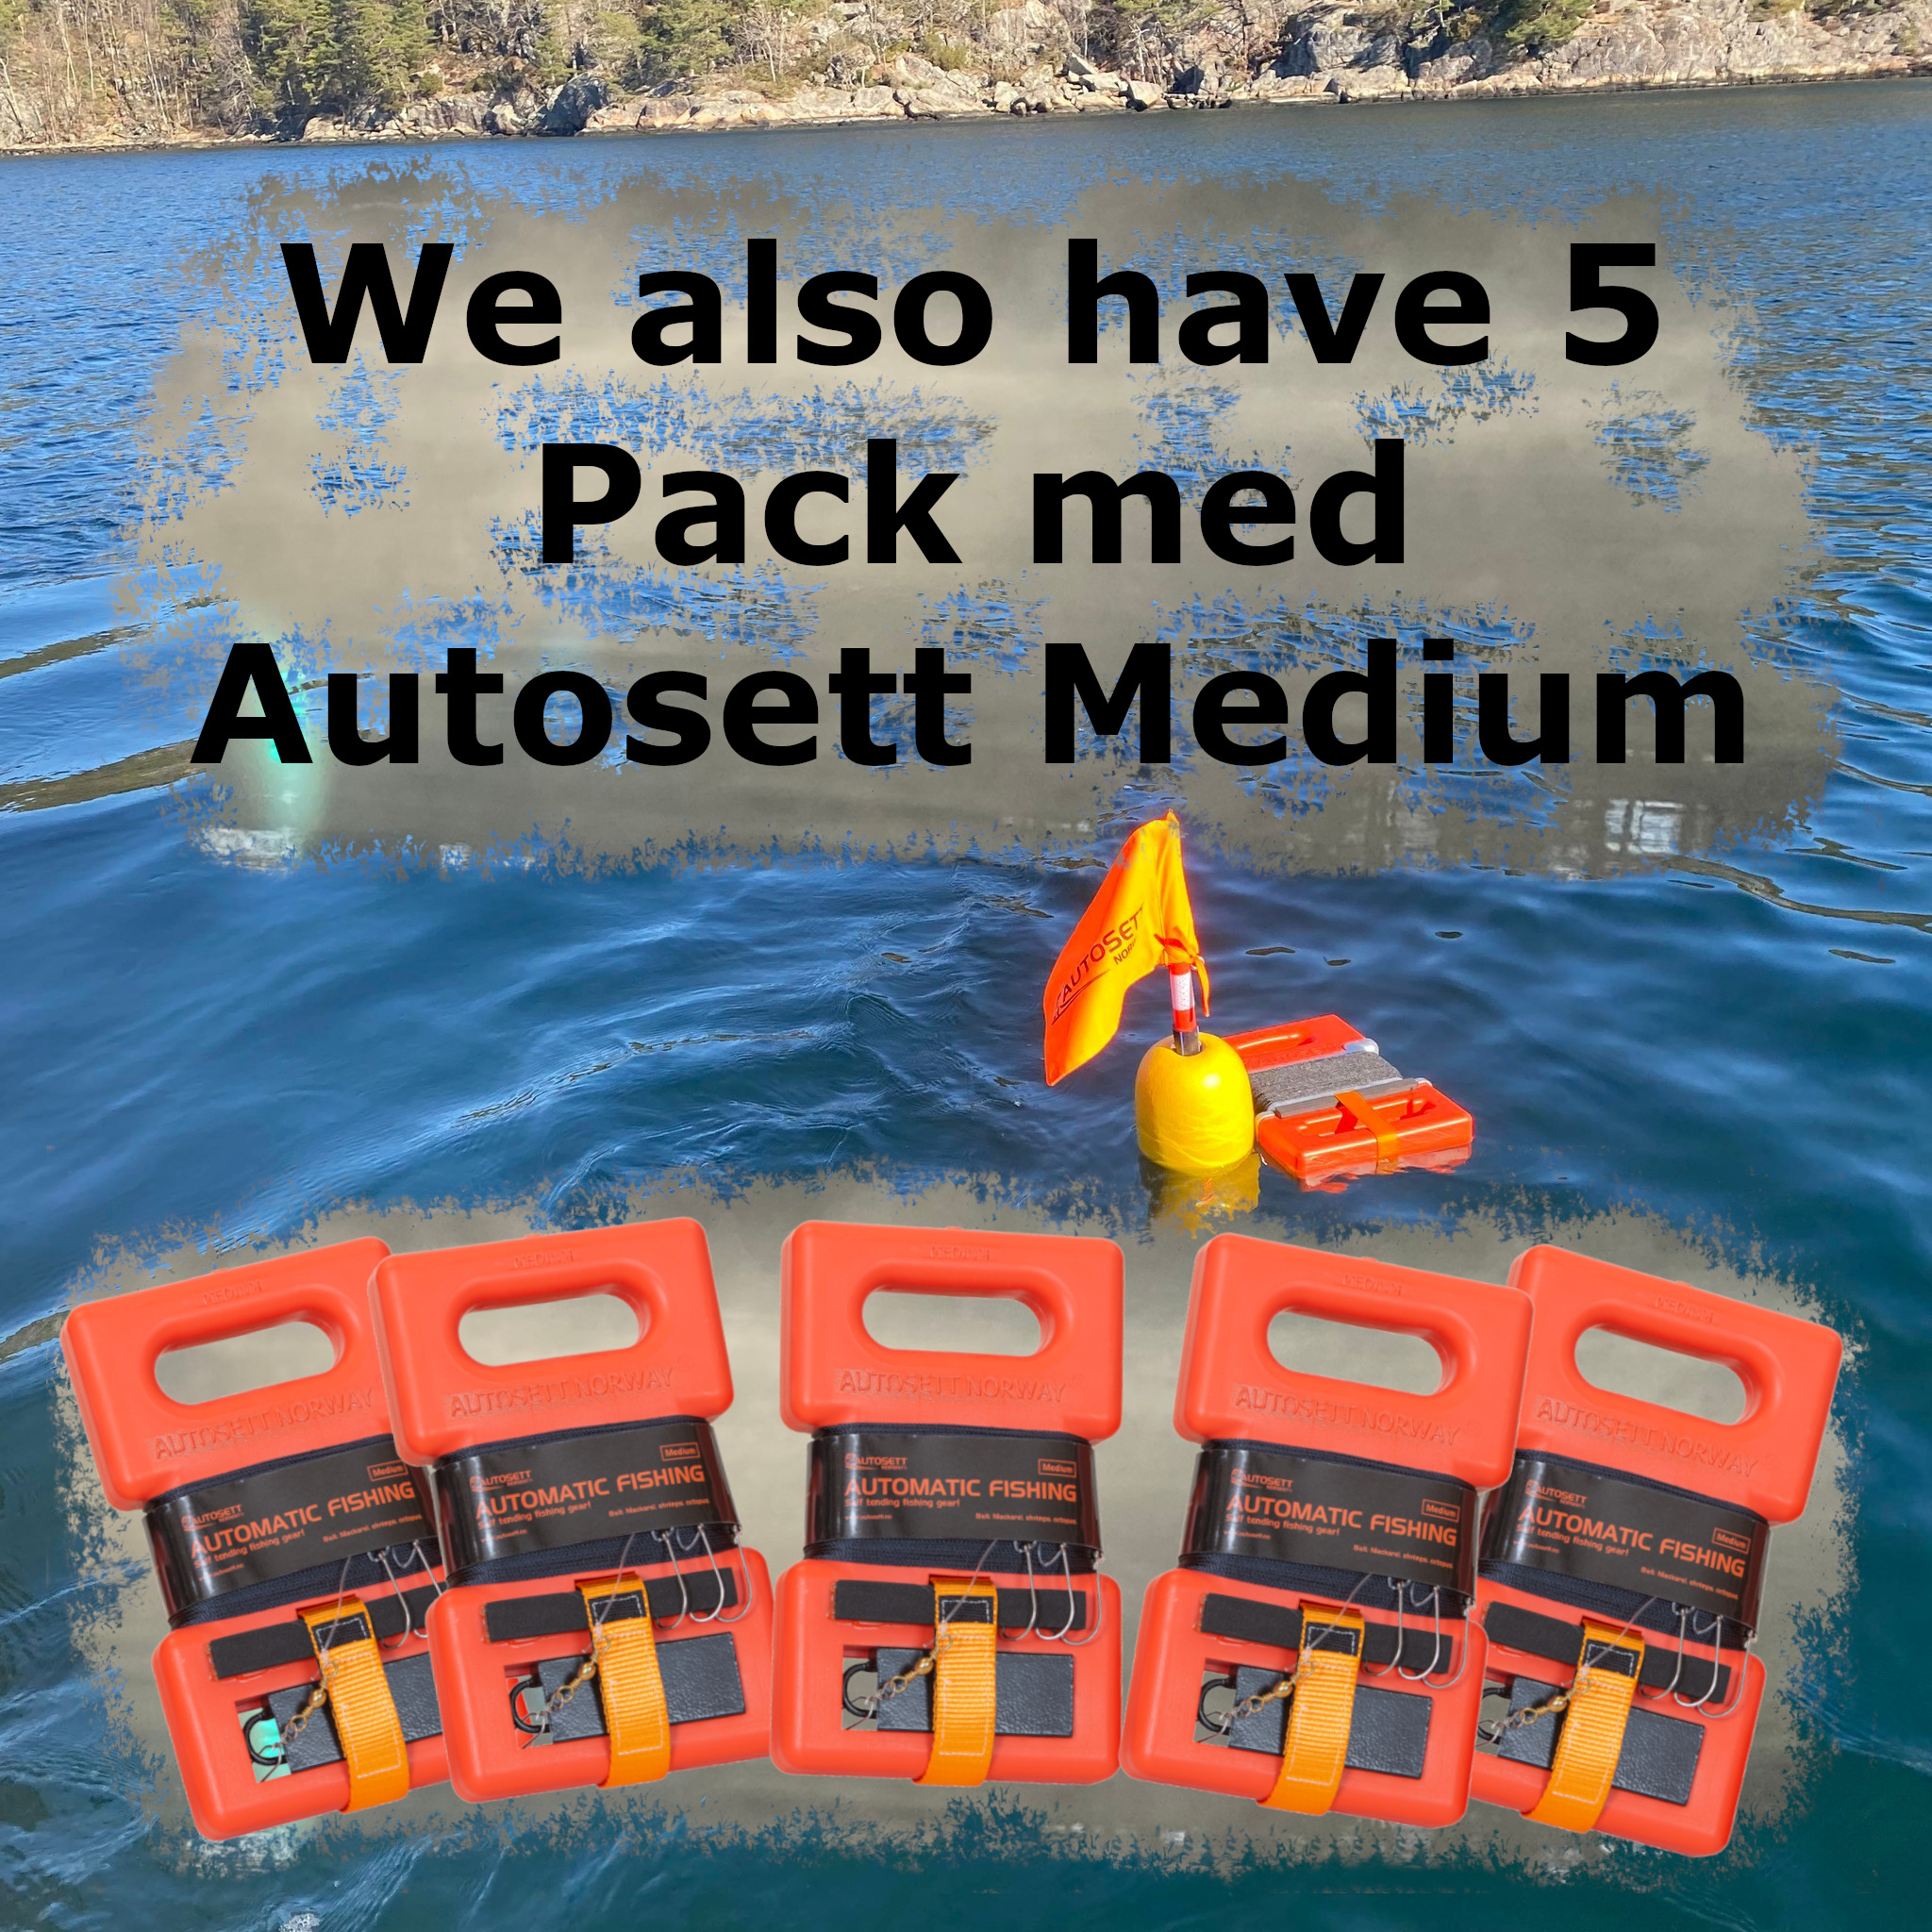 5 pack with Autosett Medium Fishing Equipment